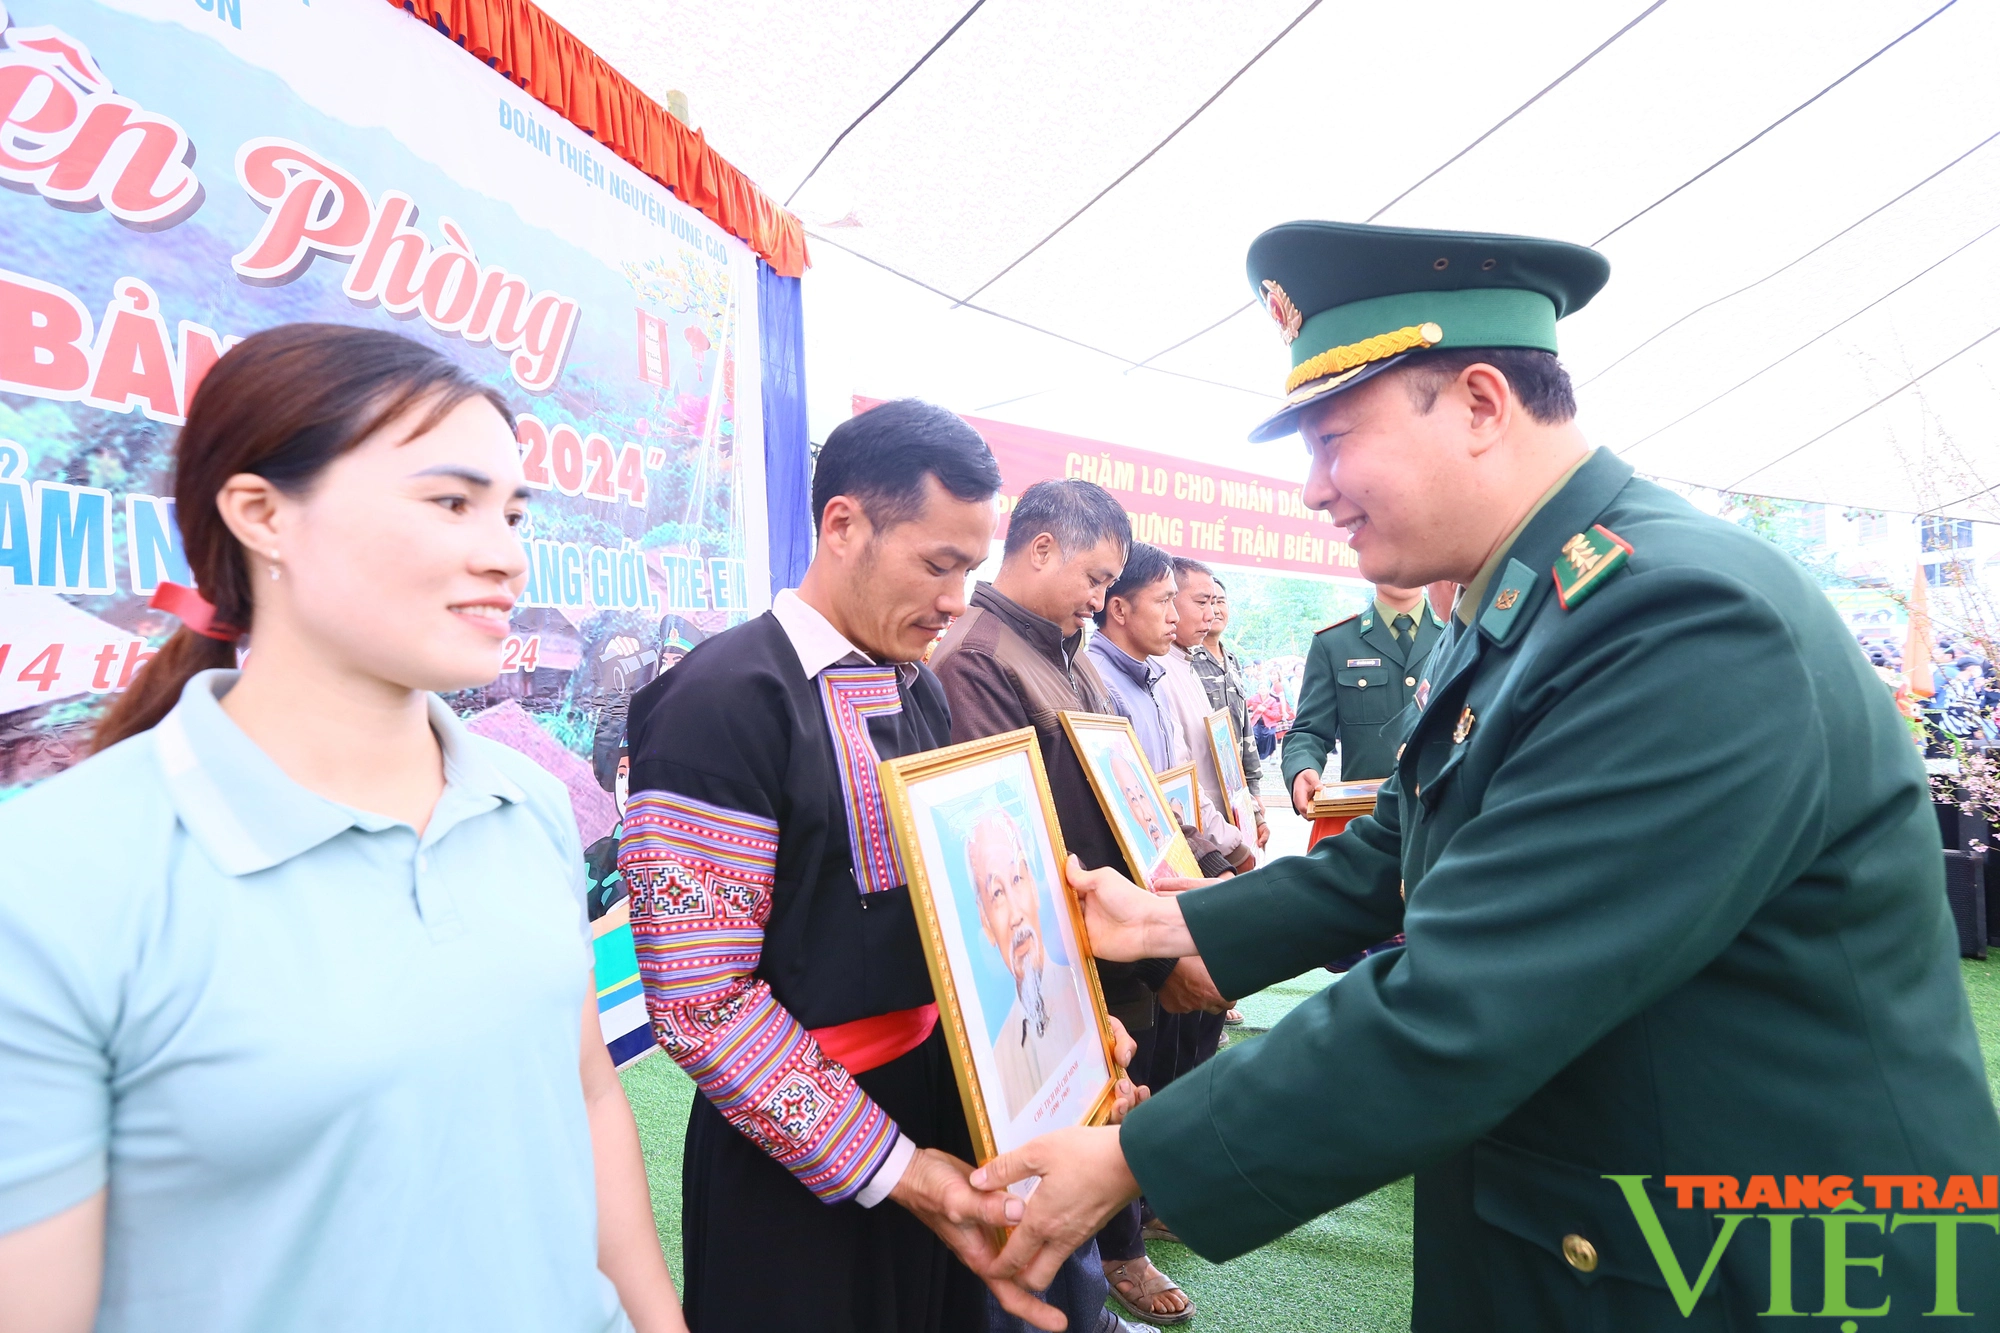 Biên phòng Sơn La quan tâm chăm lo cho học sinh và nhân dân khu vực biên giới- Ảnh 2.